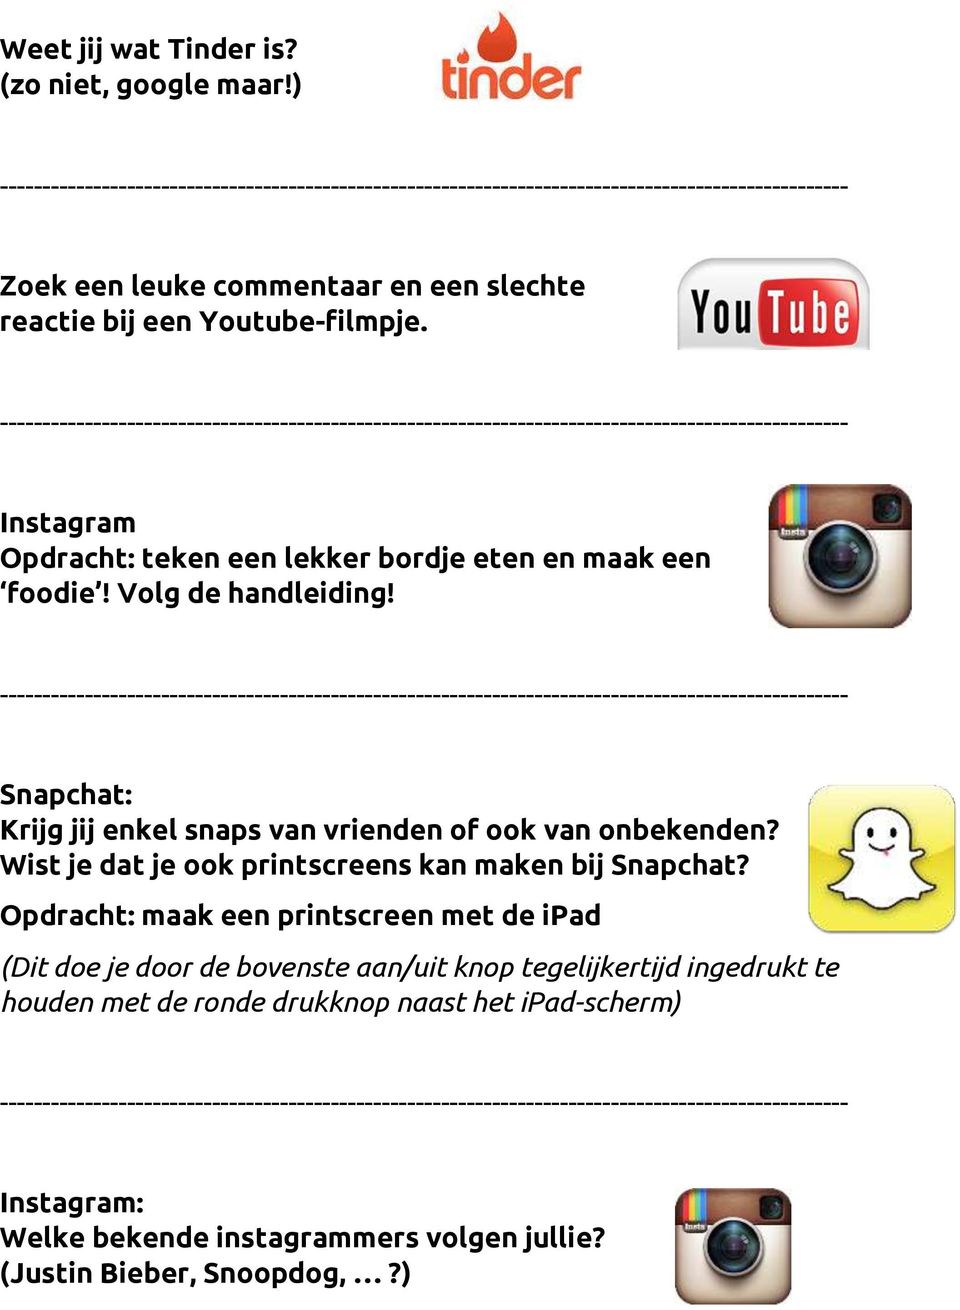 Snapchat: Krijg jij enkel snaps van vrienden of ook van onbekenden? Wist je dat je ook printscreens kan maken bij Snapchat?